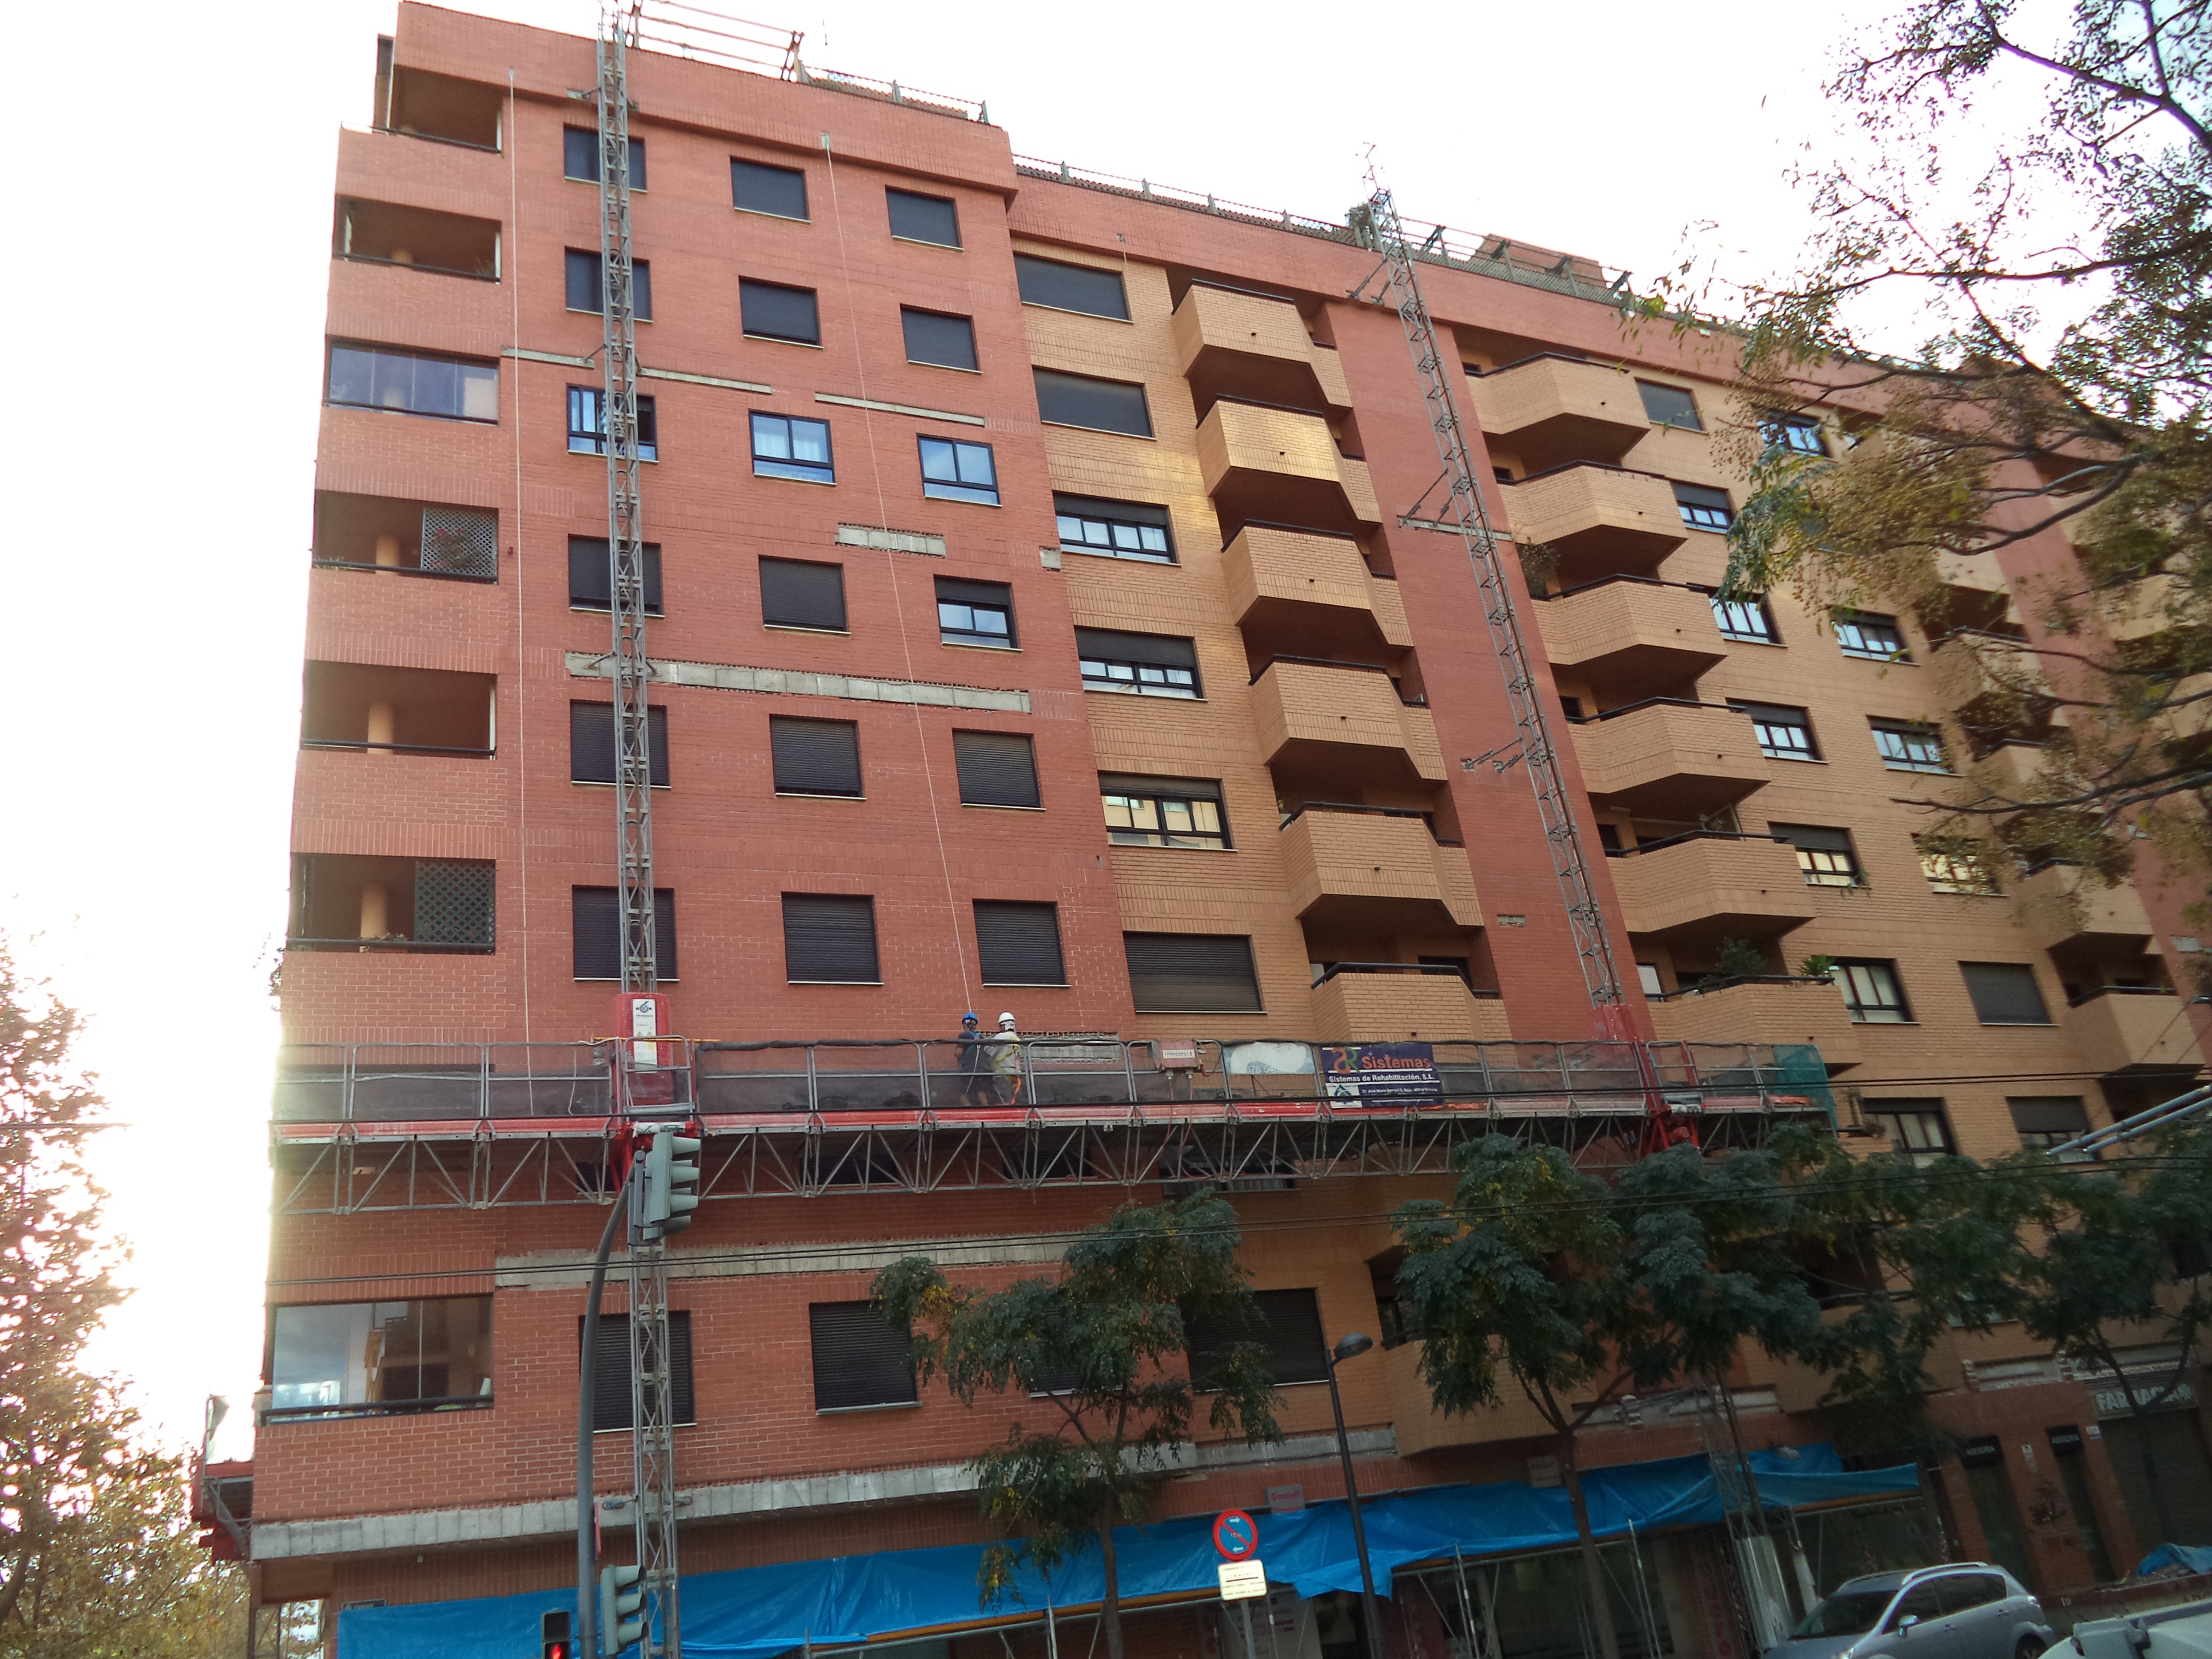 C/ DUQUE DE MANDAS 36 - Rehabilitación de edificios Valencia